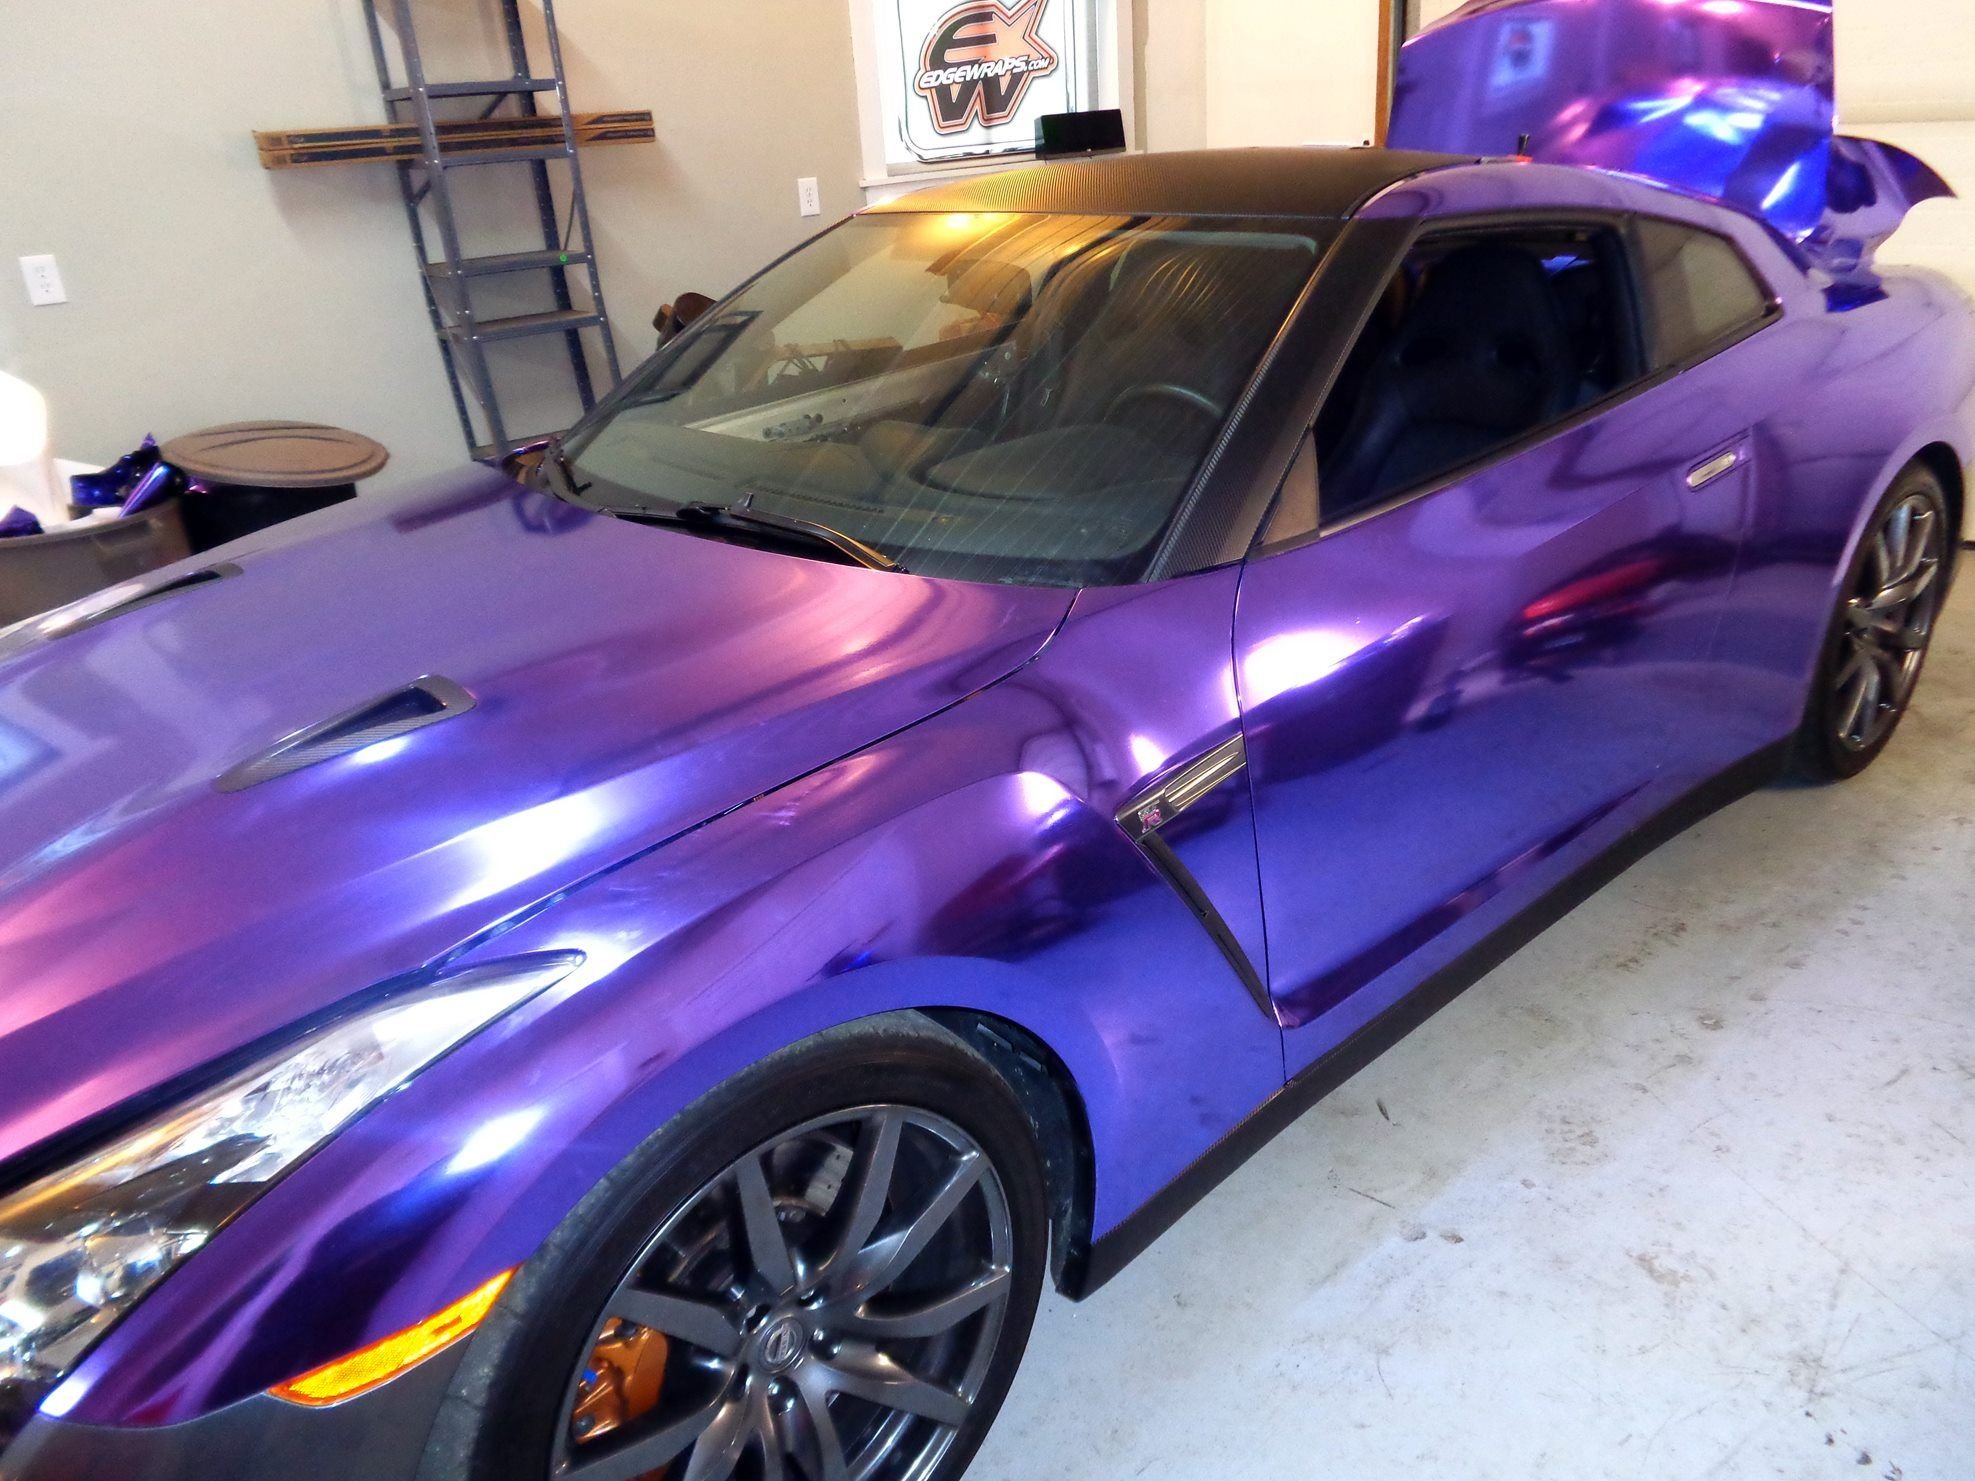 Фиолетовый хамелеон. Nissan GTR фиолетовый. ГТР 666 фиолетовый хамелеон. Фиолетовая краска для авто. Фиолетовая пленка на авто.